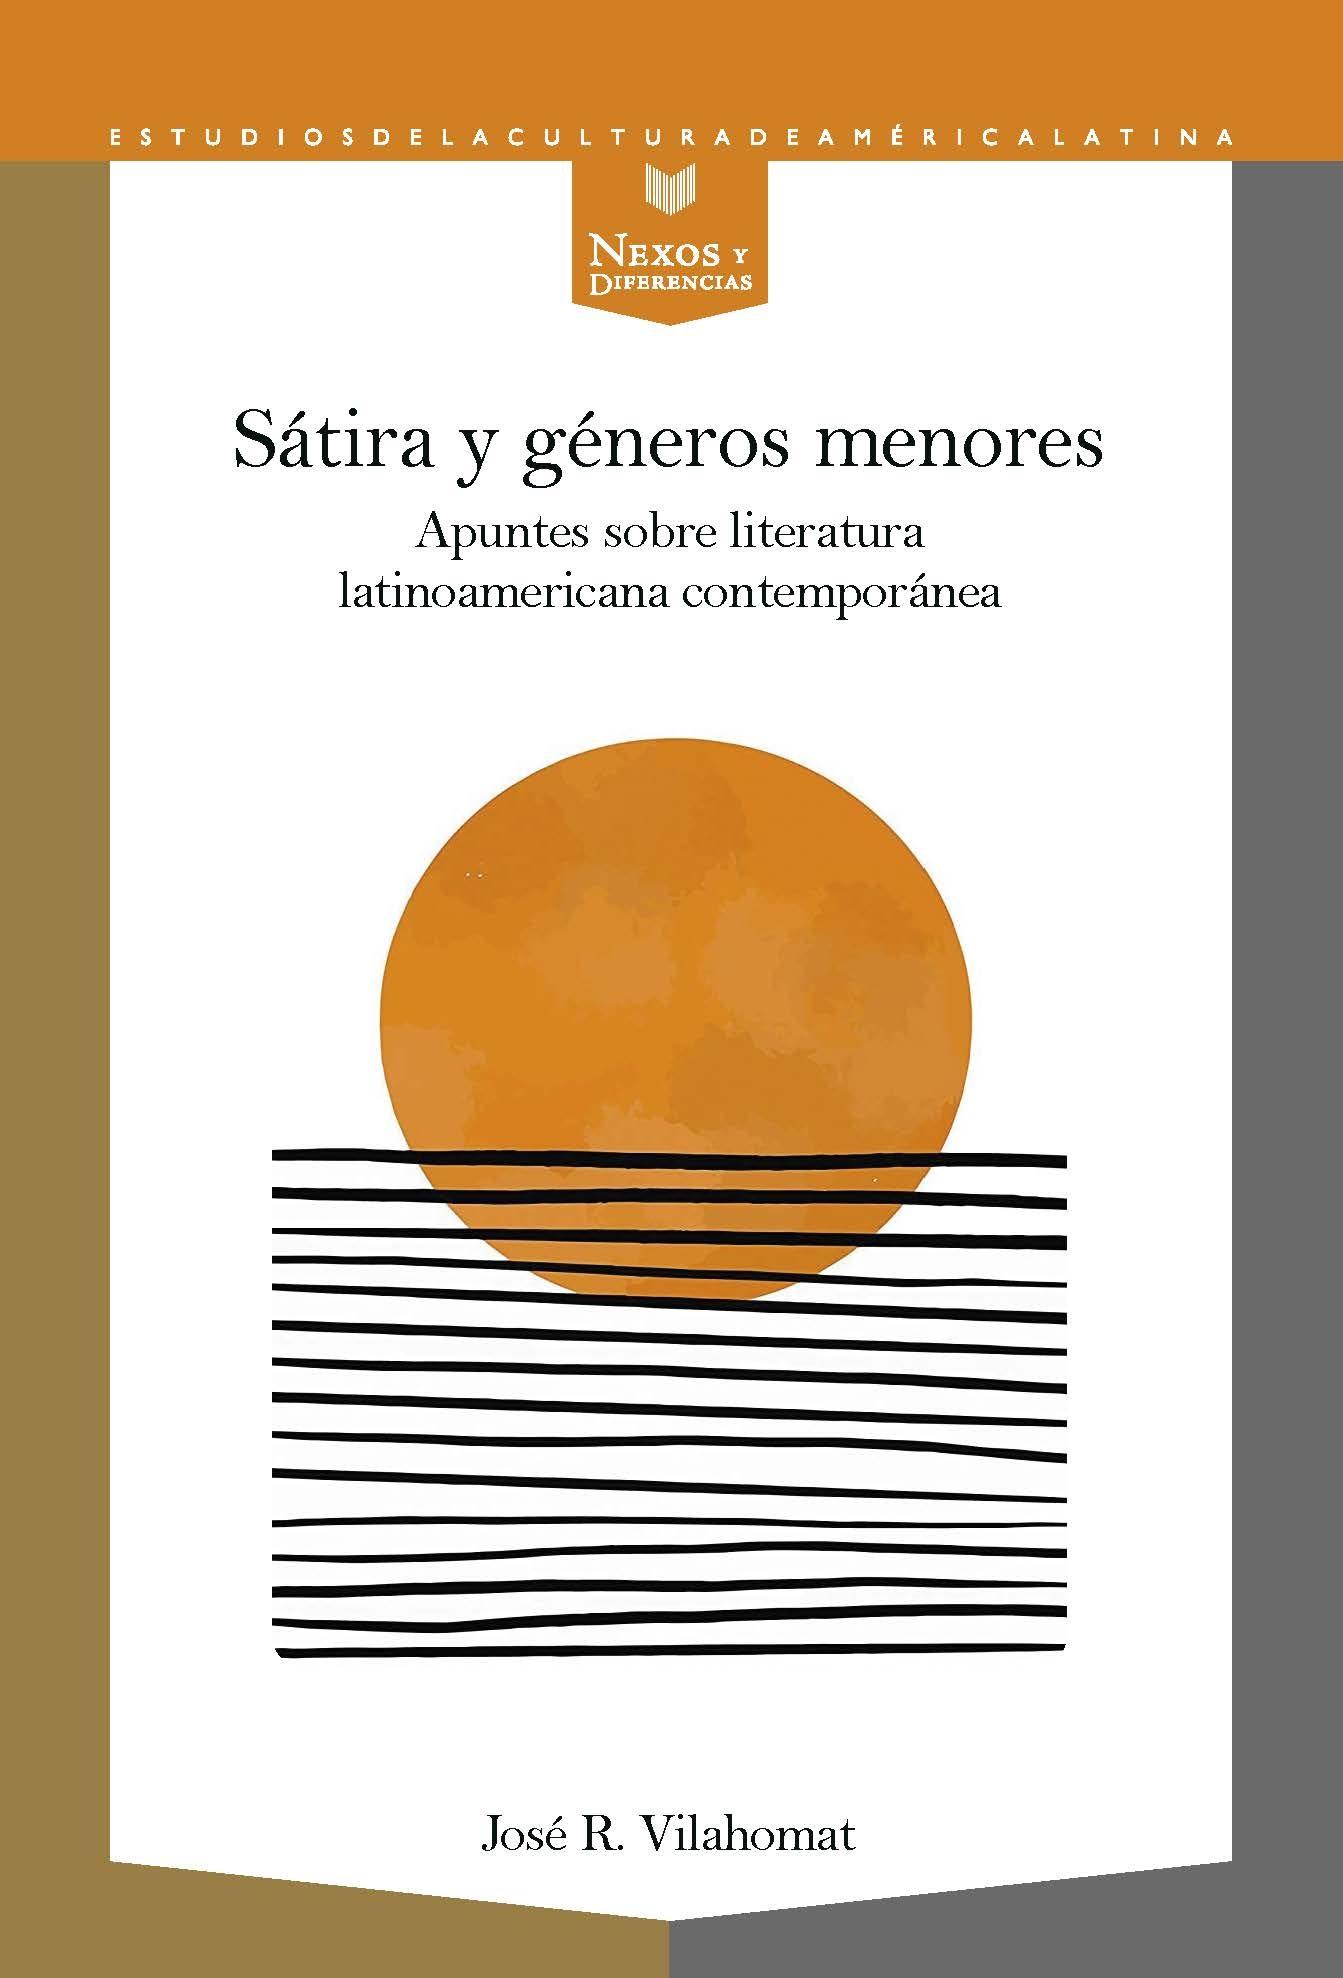 SÁTIRA Y GÉNEROS MENORES "apuntes sobre literatura latinoamericana contemporánea"